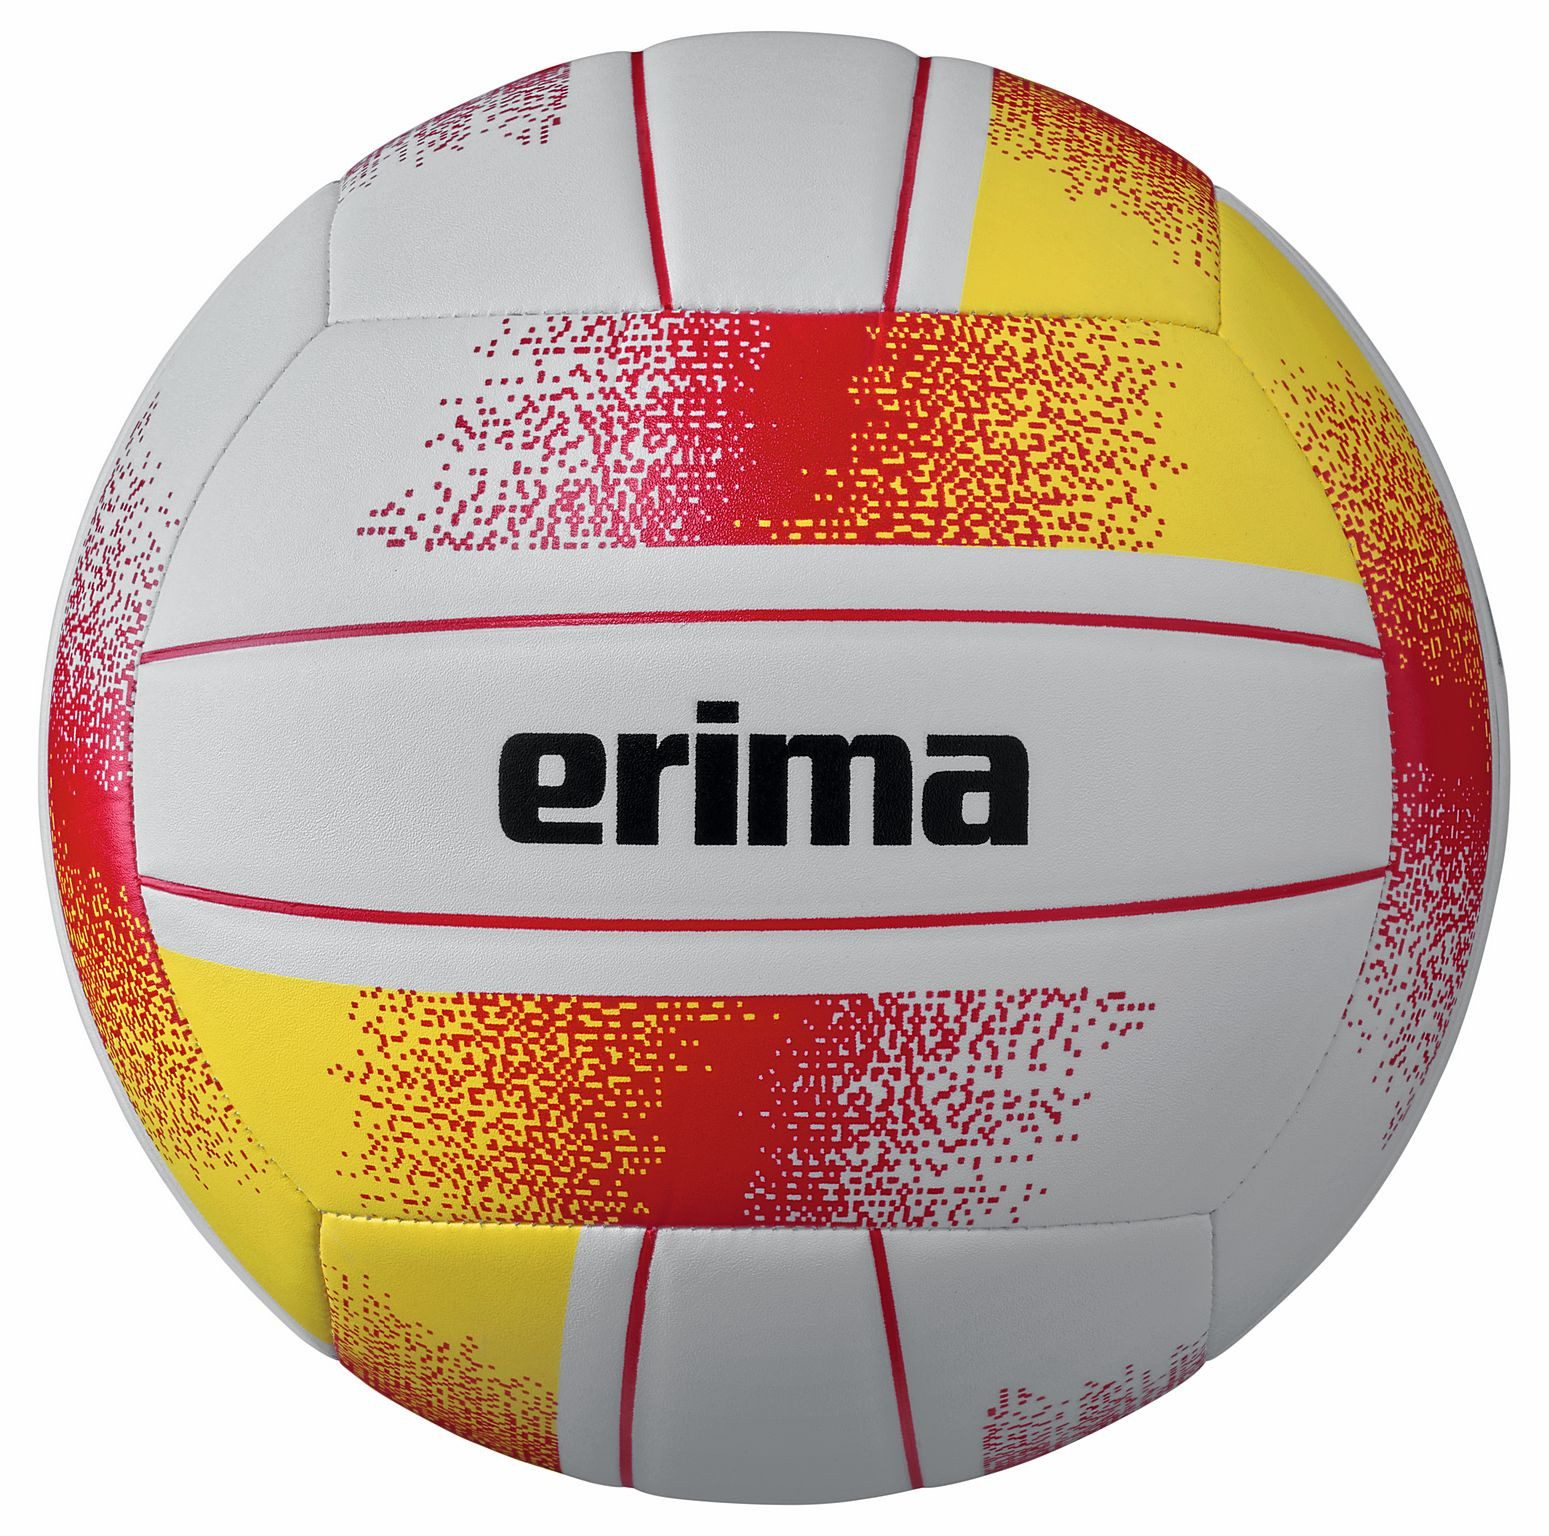 Erima Volleyball Allround Volleyball